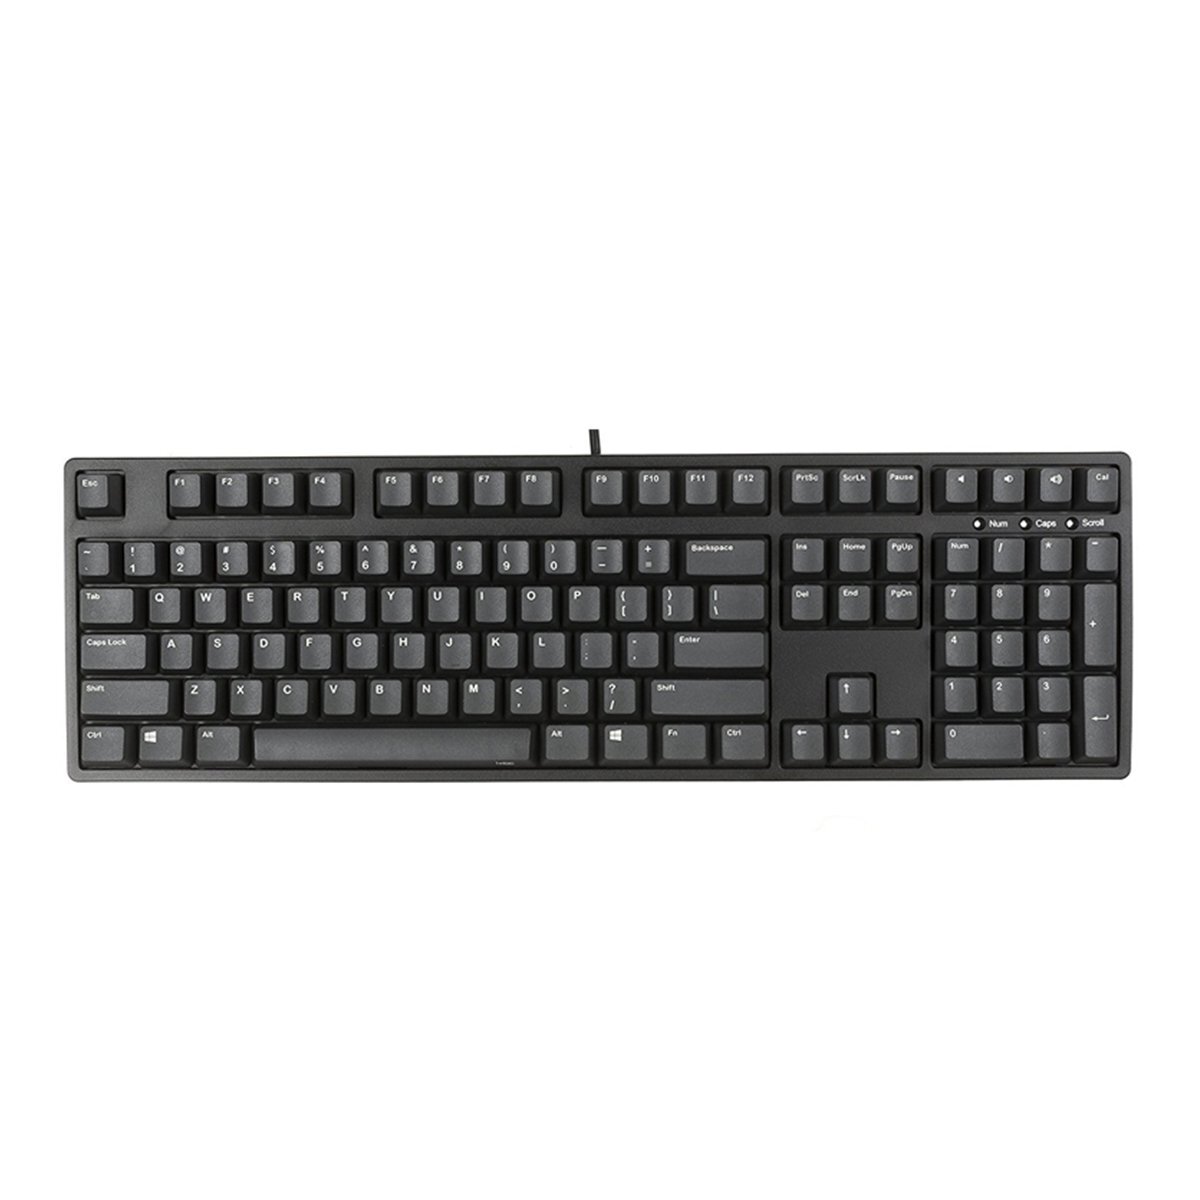 Bàn phím - Keyboard iKBC CD108 PD